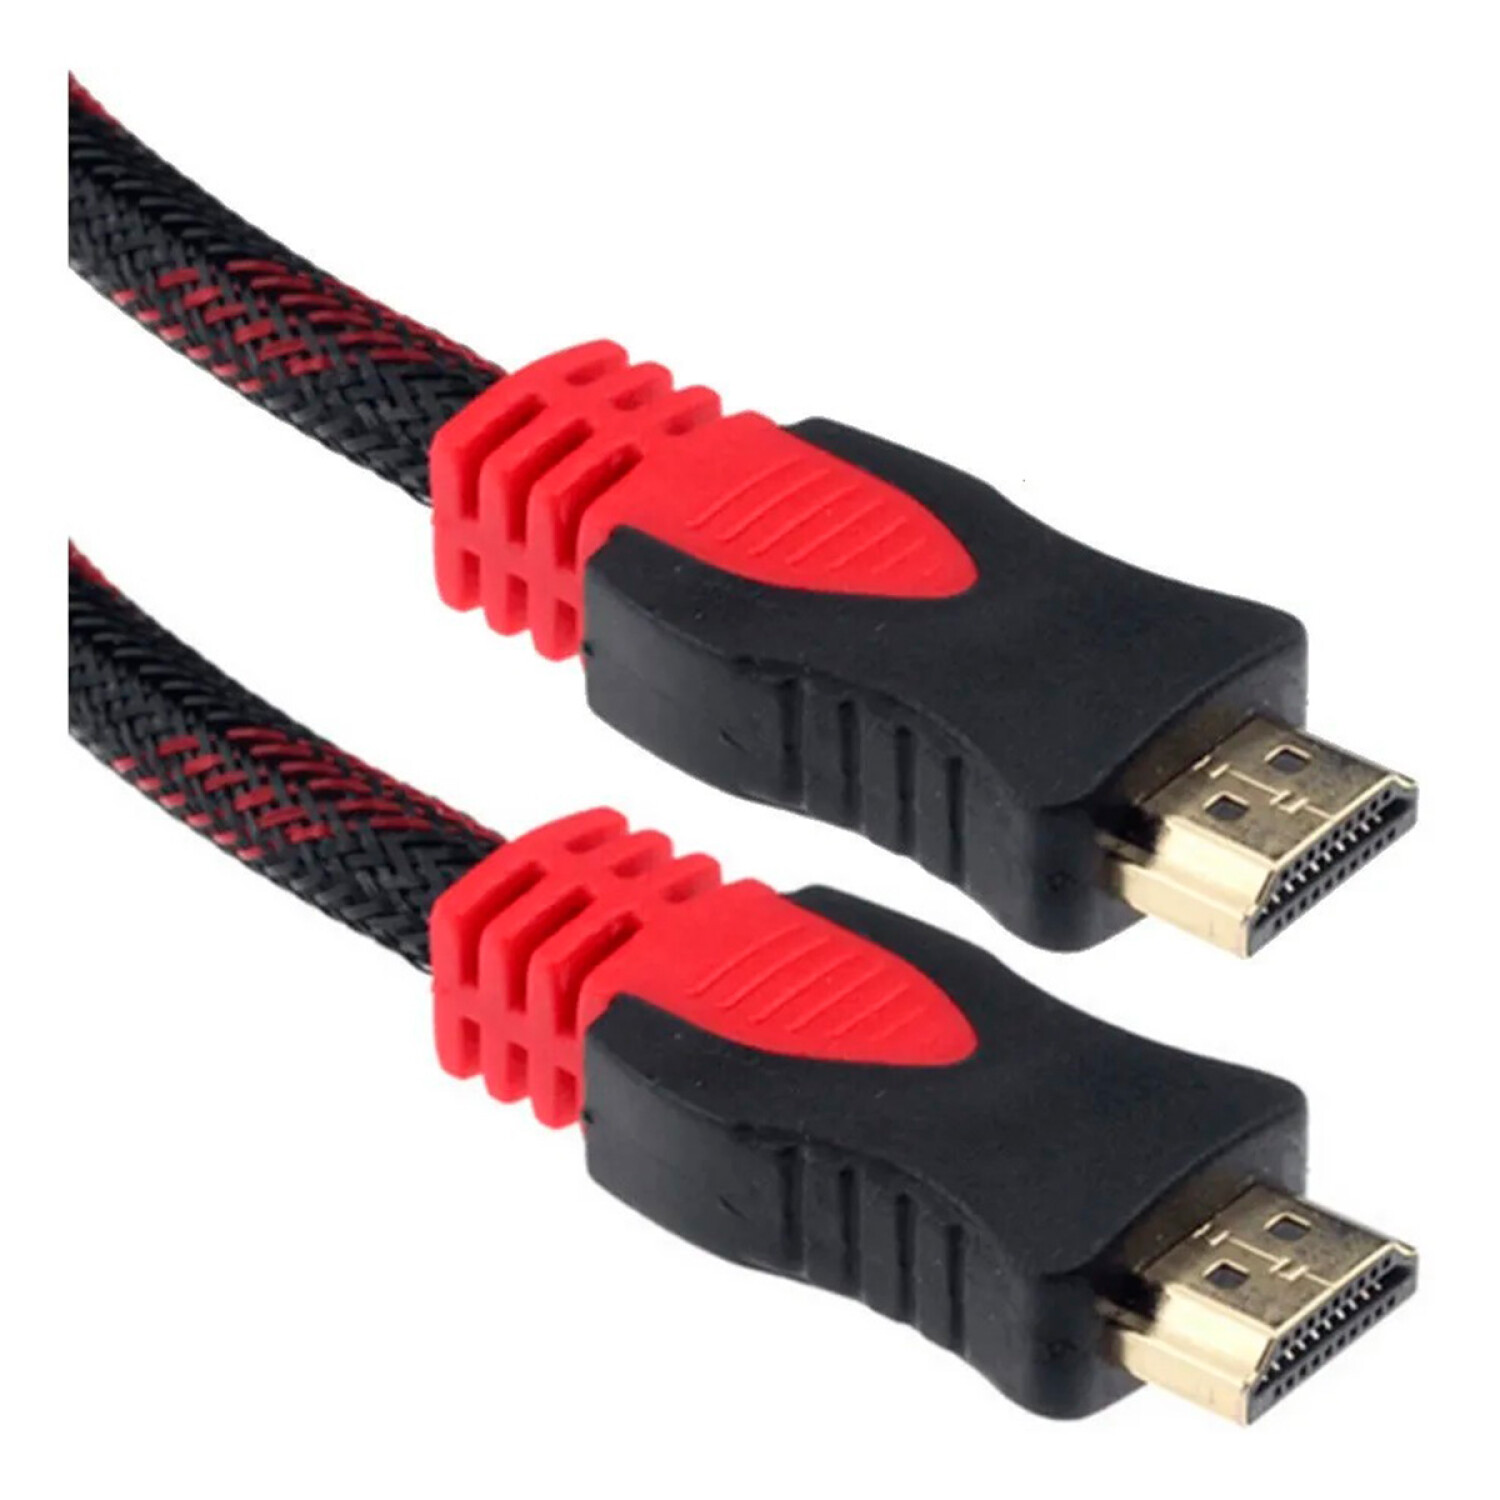 Cable HDMI a HDMI 20 Metros Reforzado - 001 — Universo Binario